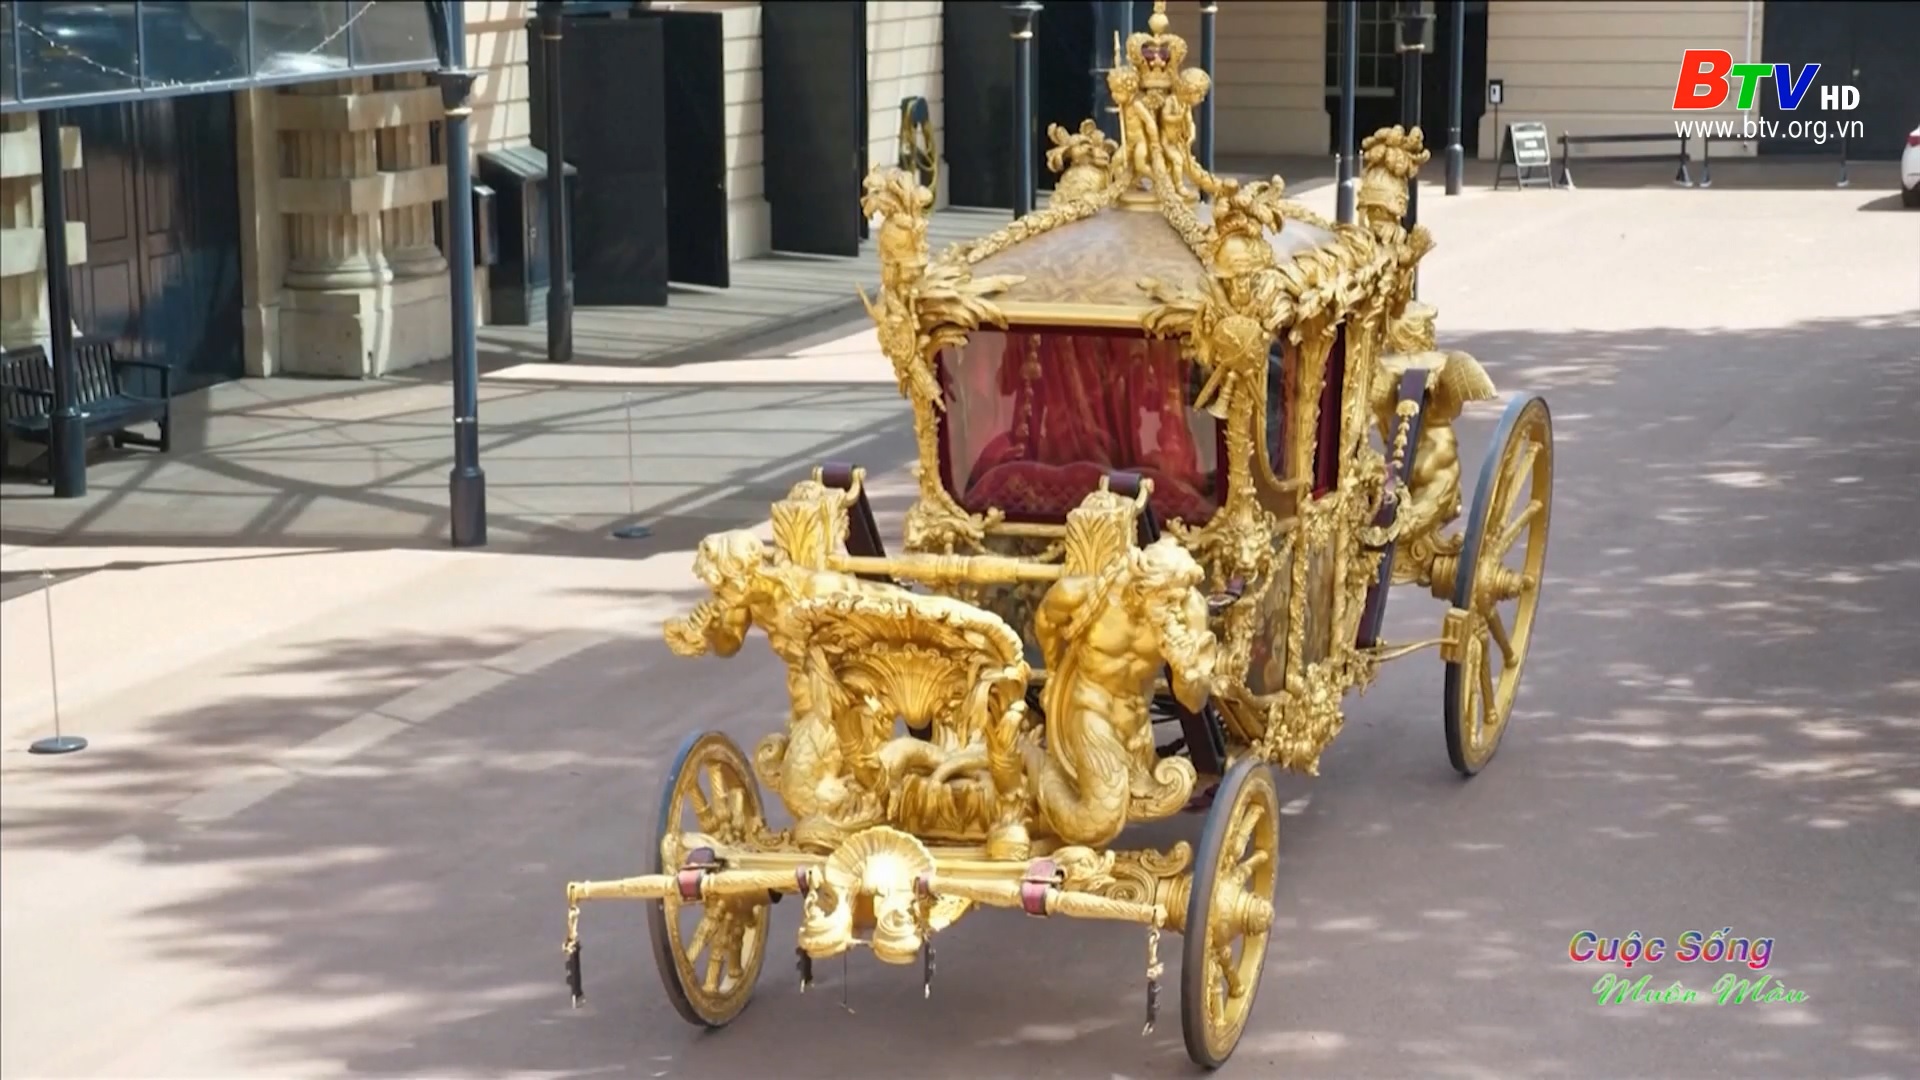 Cỗ xe ngựa mạ vàng sẽ xuất hiện trong đại lễ Bạch kim của nữ hoàng Elizabeth